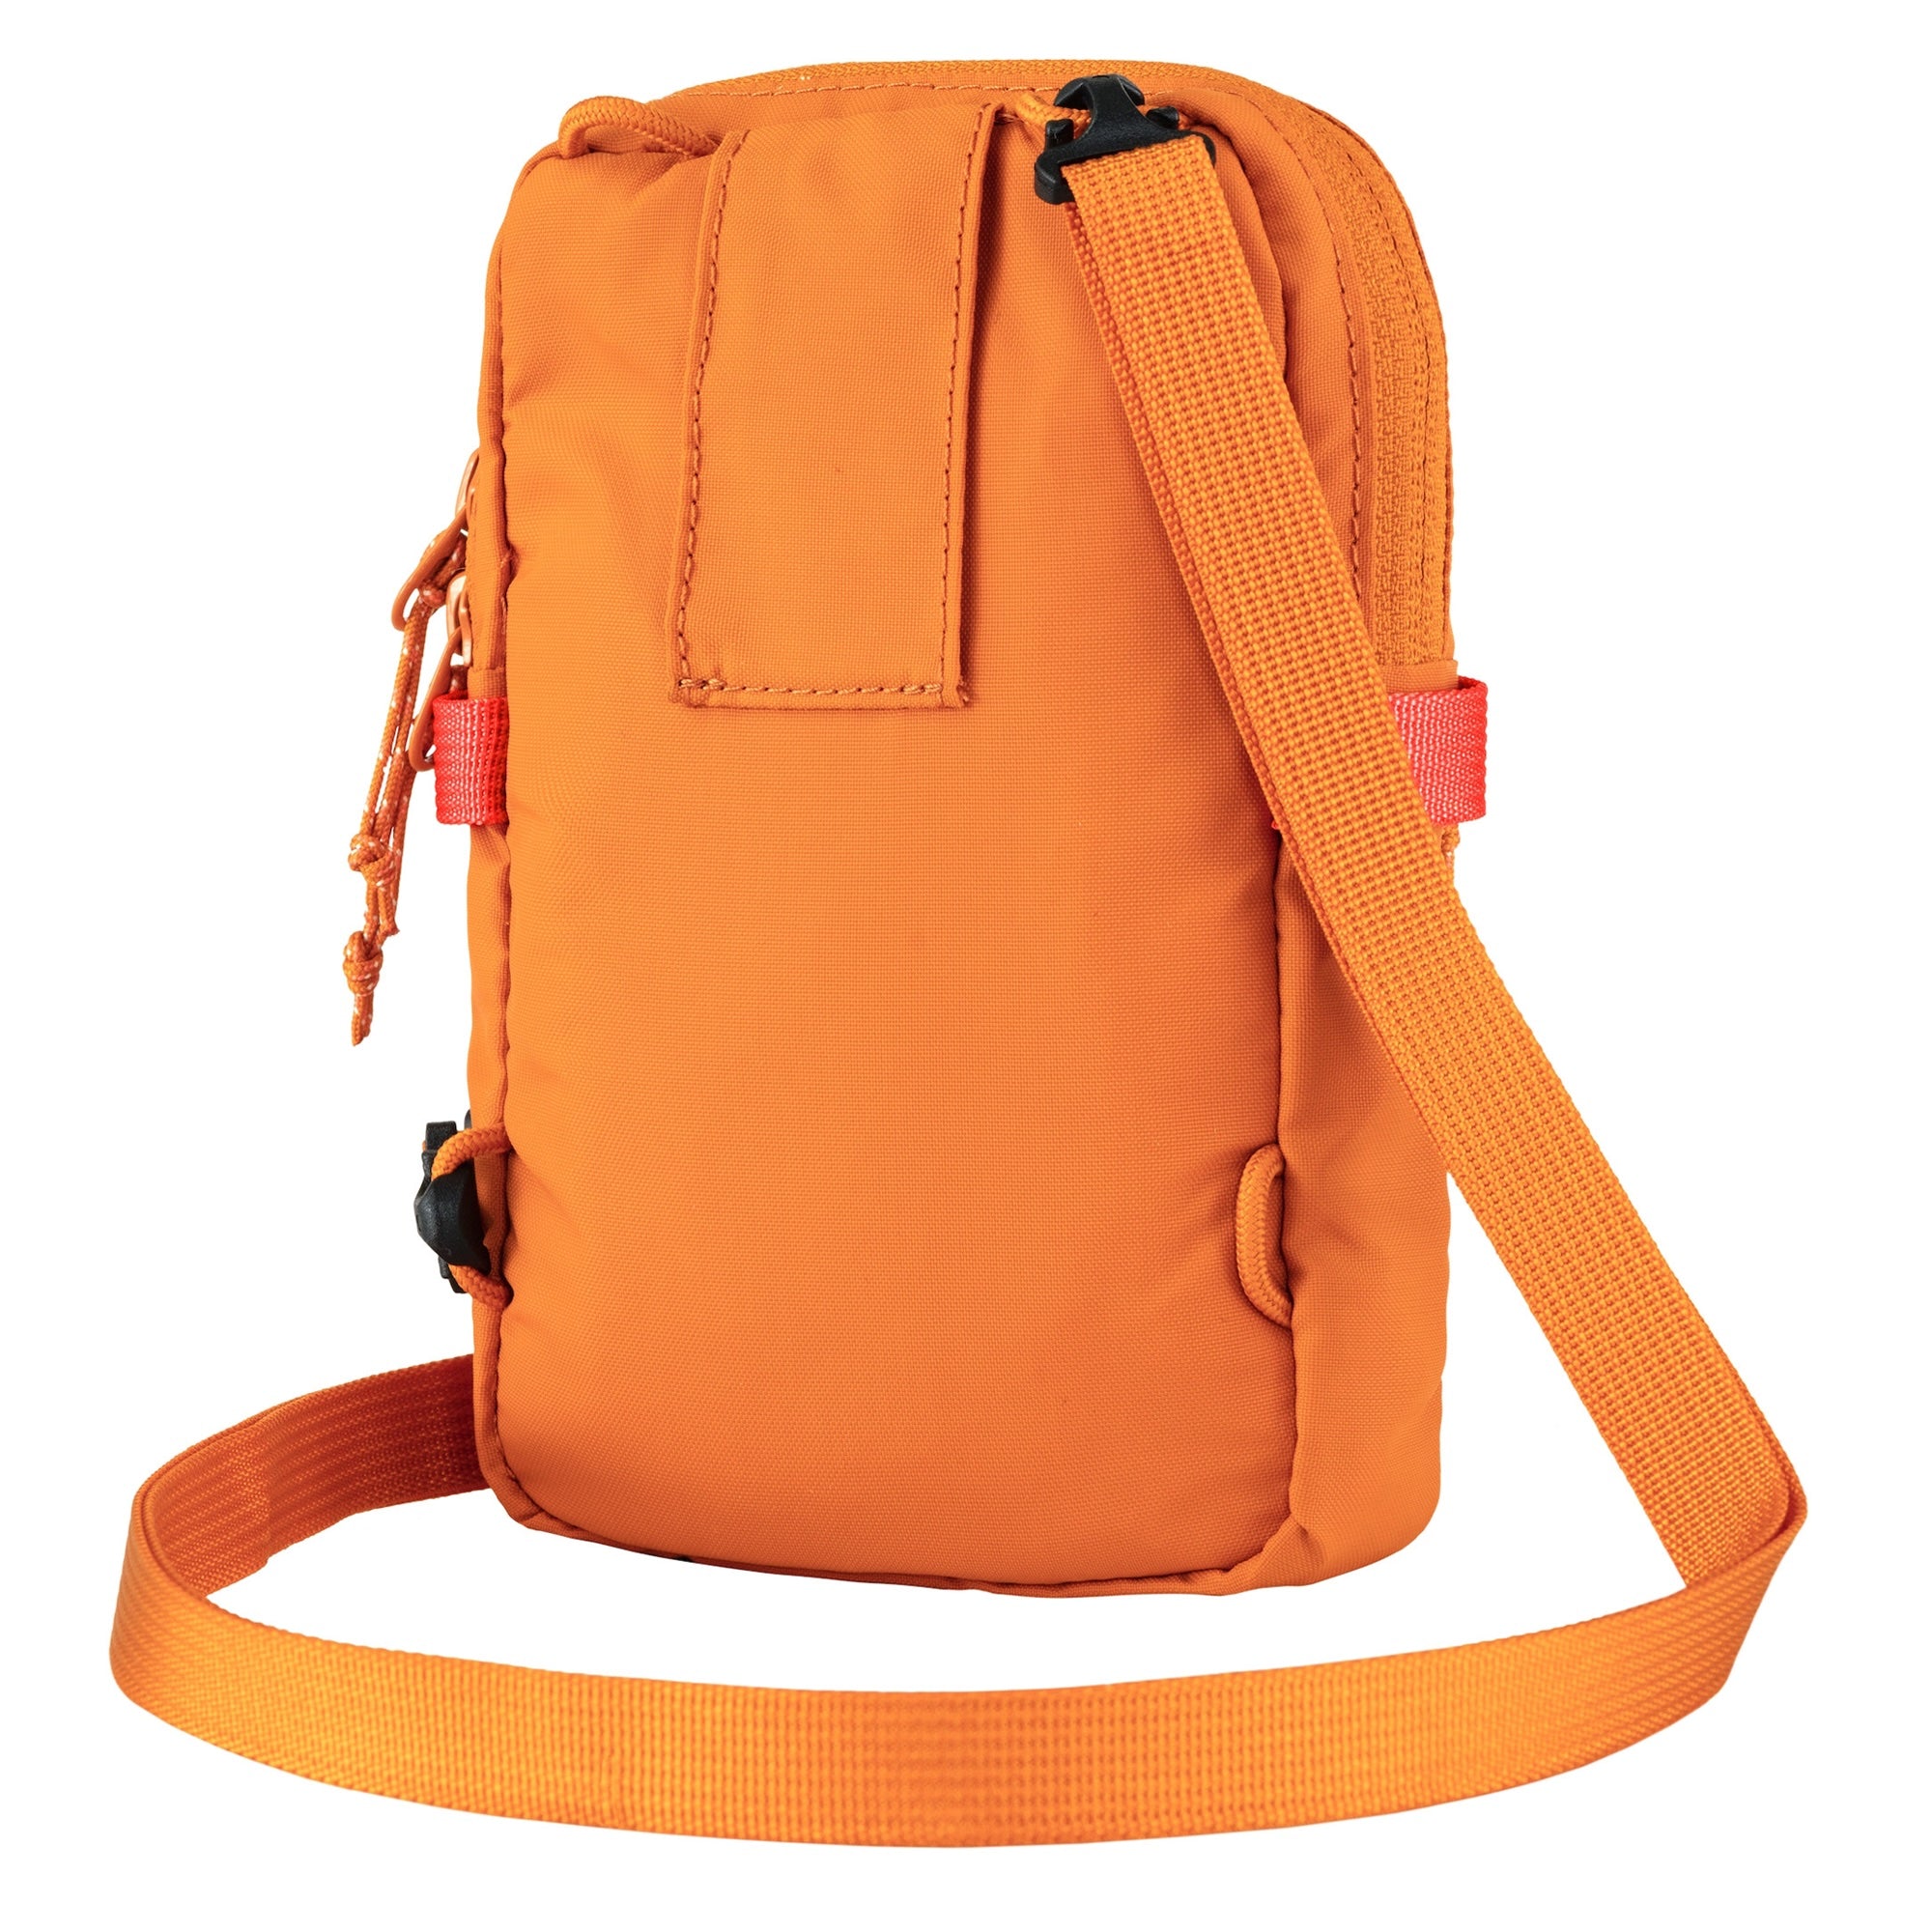 Fjallraven High Coast Pocket Bag - Sunset Orange